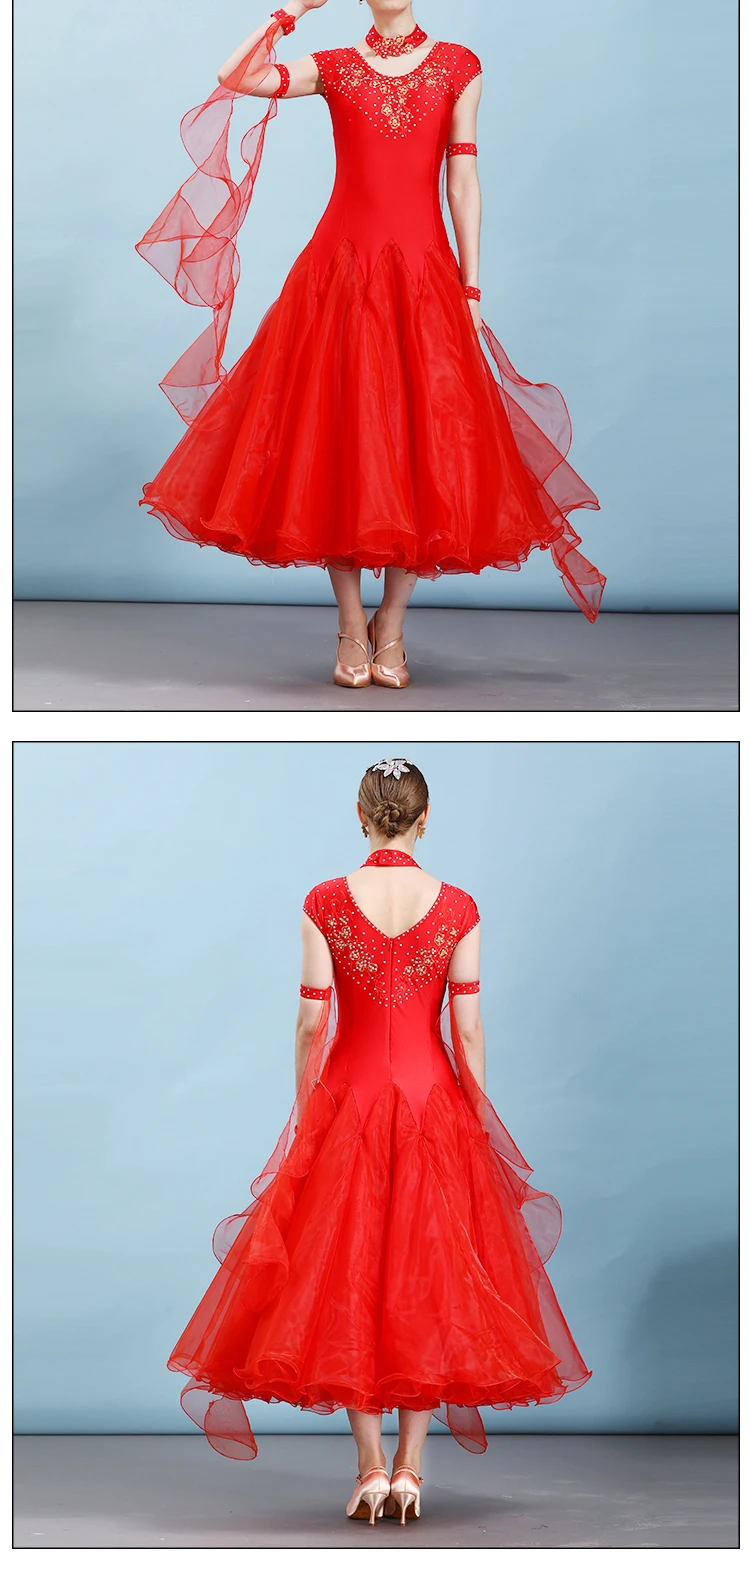 Красный Бальные платья Вальс Современный Танцы платье для бальных танцев конкурс платья Стандартный Бальные танцы одежда танго платье